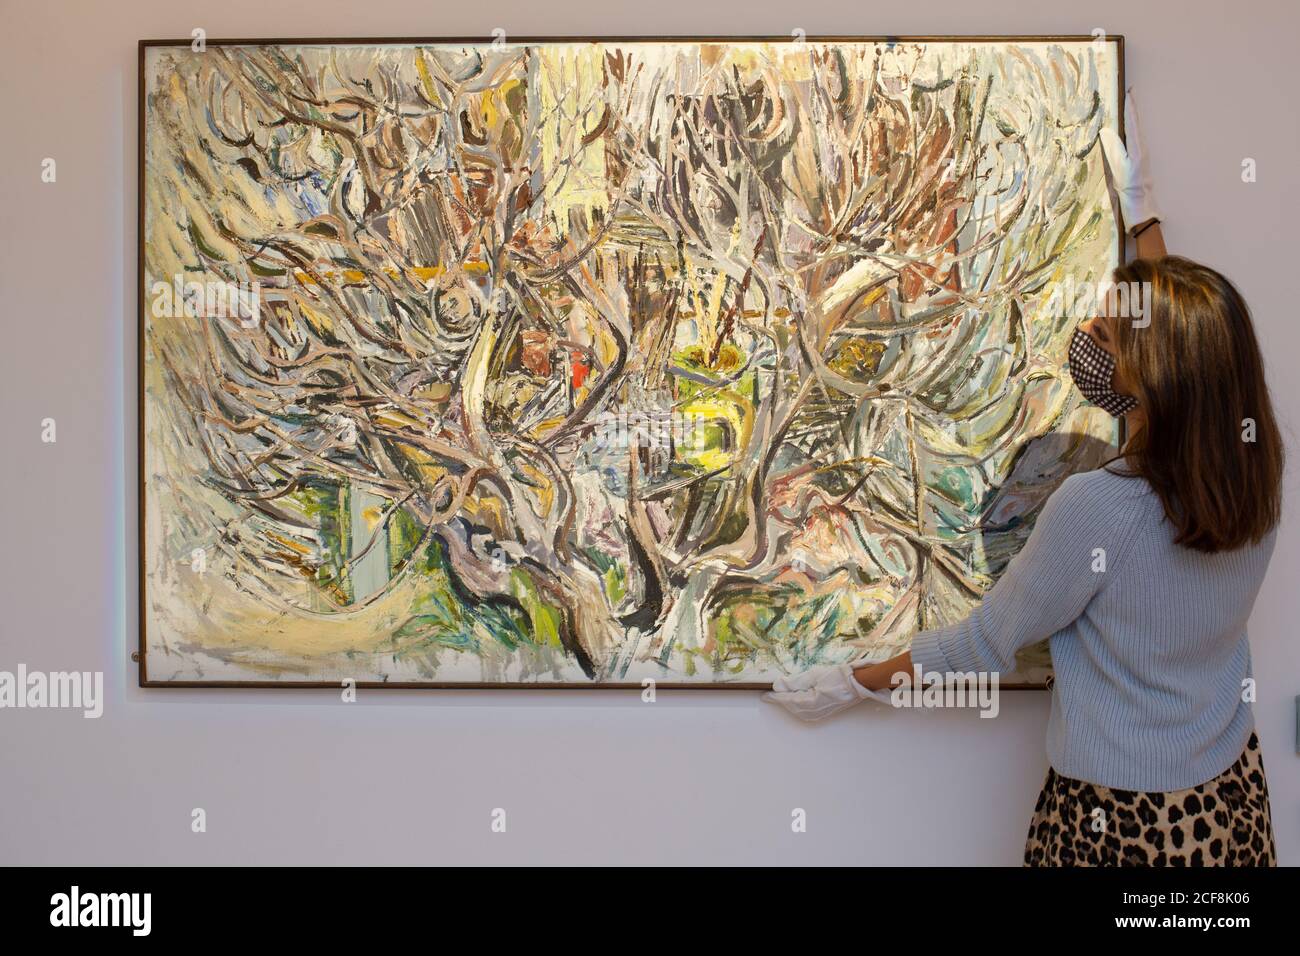 Londres, Reino Unido, 4 de septiembre de 2020: Se espera que la venta anual de Arte Irlandés de Sotheby traiga alrededor de £3.2 millones. Incluye el árbol de Oliva de Patrick Swift. £8,000-12,000 crédito: Andy Sillett/Alamy Live News Foto de stock